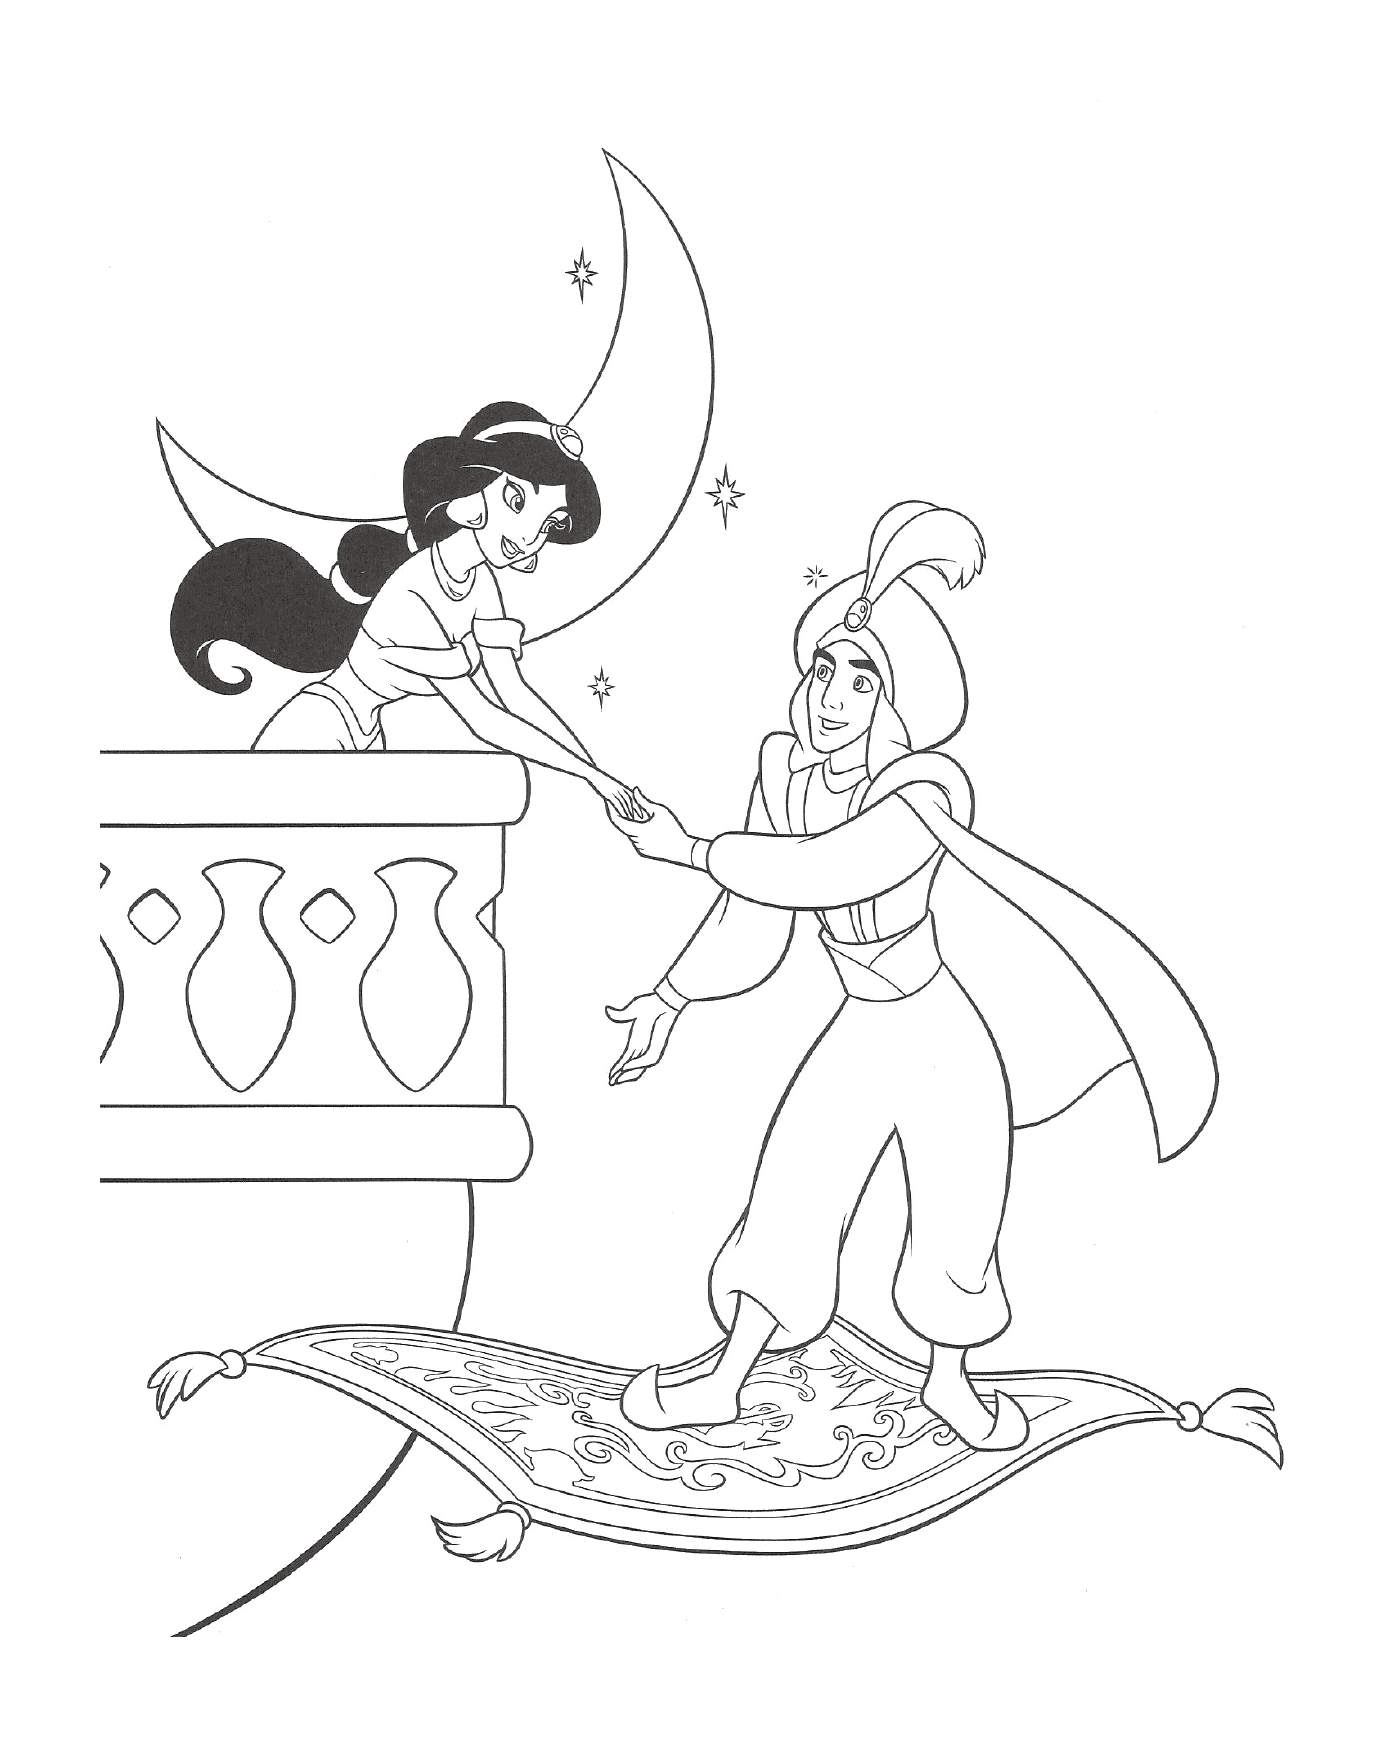  Aladin kommt, um Prinzessin Jasmine zu holen 